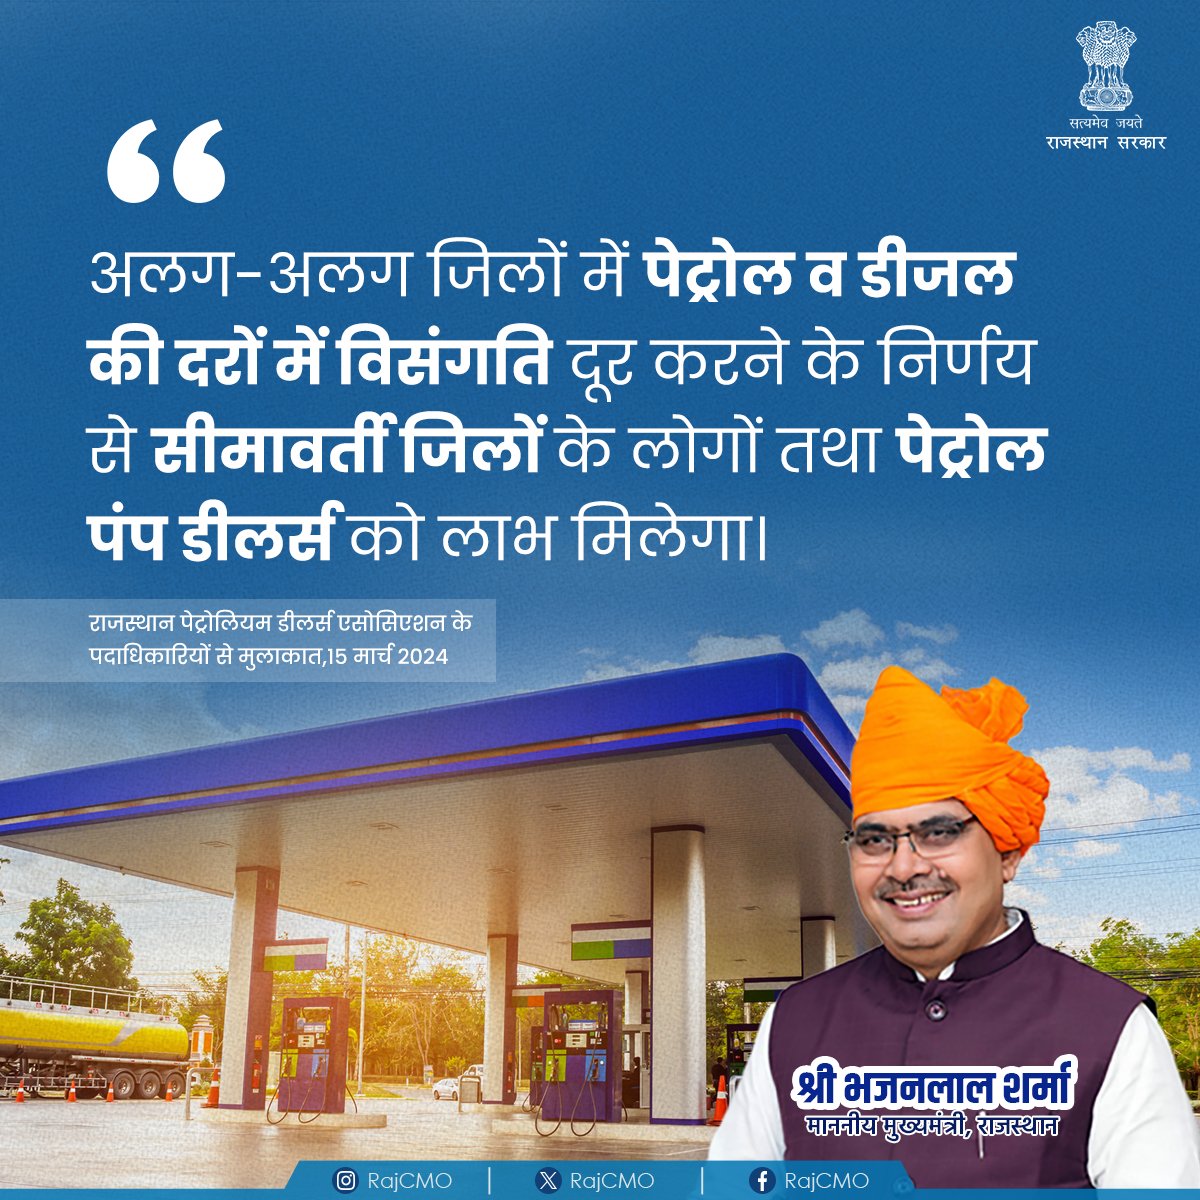 विभिन्न जिलों में लोगों को पेट्रोल डीजल की दरों में कमी से लाभ मिलेगा। @BhajanlalBjp #RajCMO #CMORajasthan